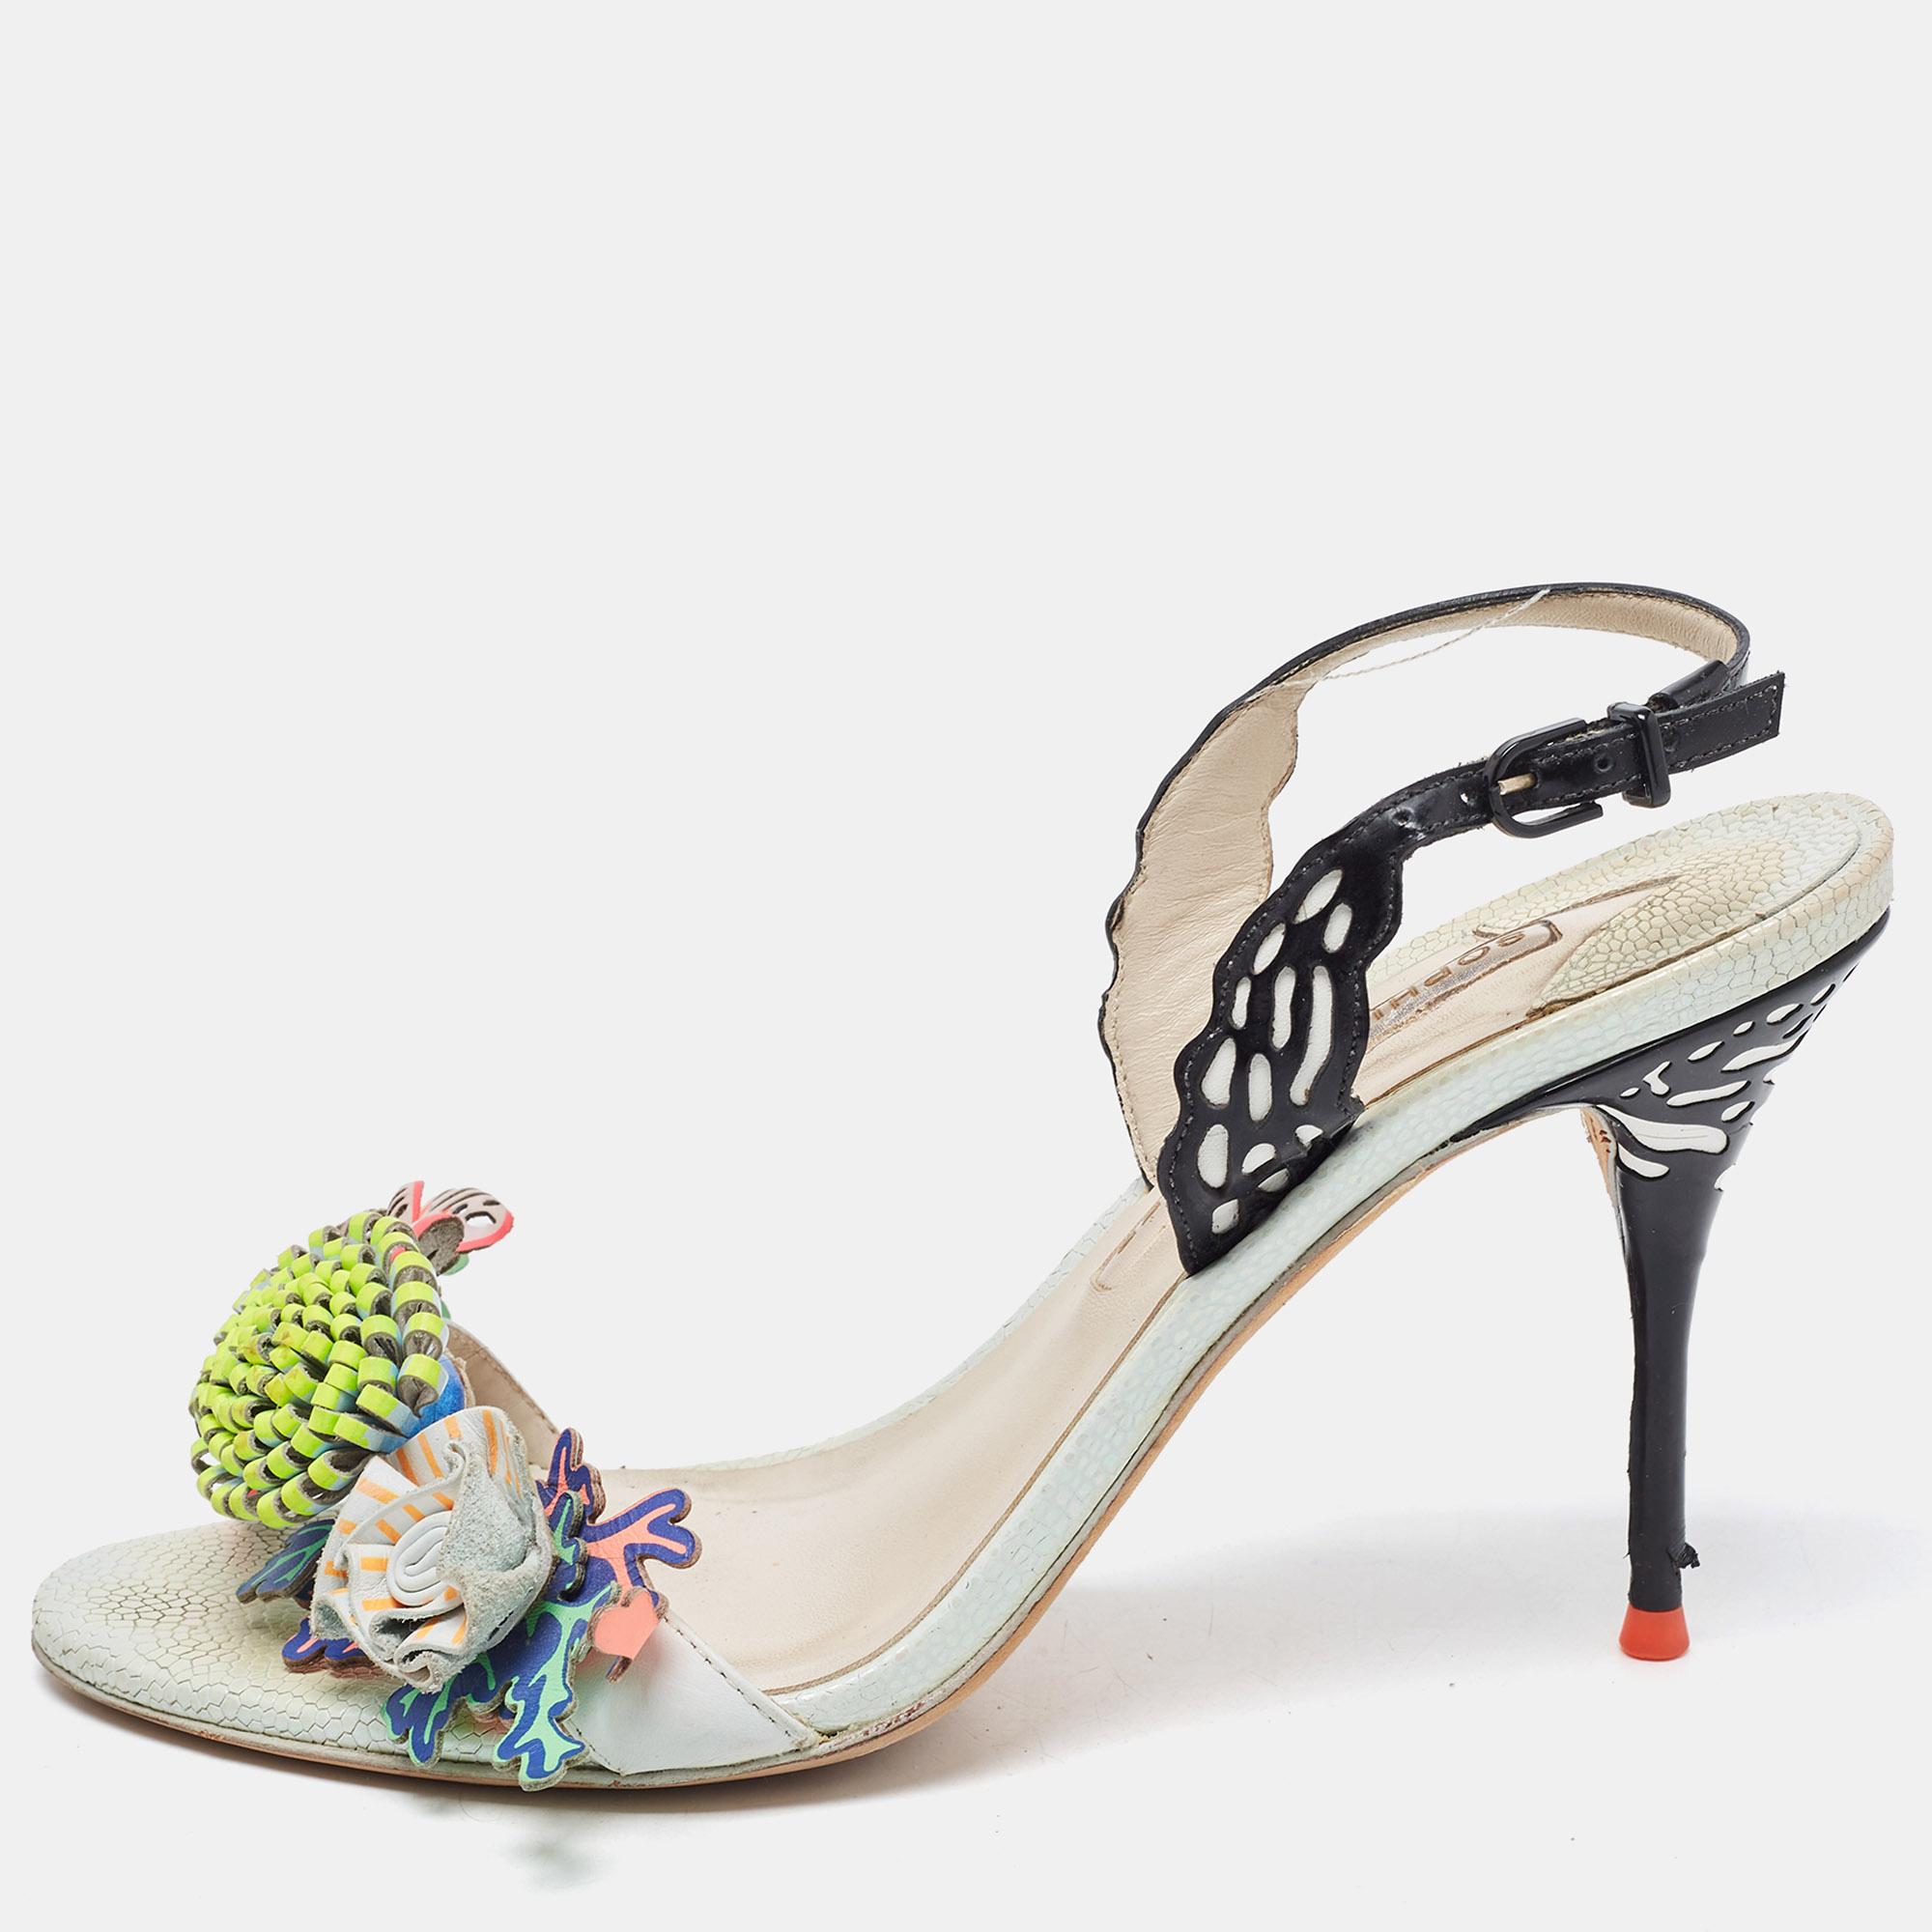 Sophia Webster Multicolor Leather Lilico Underwater Floral Embellished Ankle Strap Sandals Size 38.5